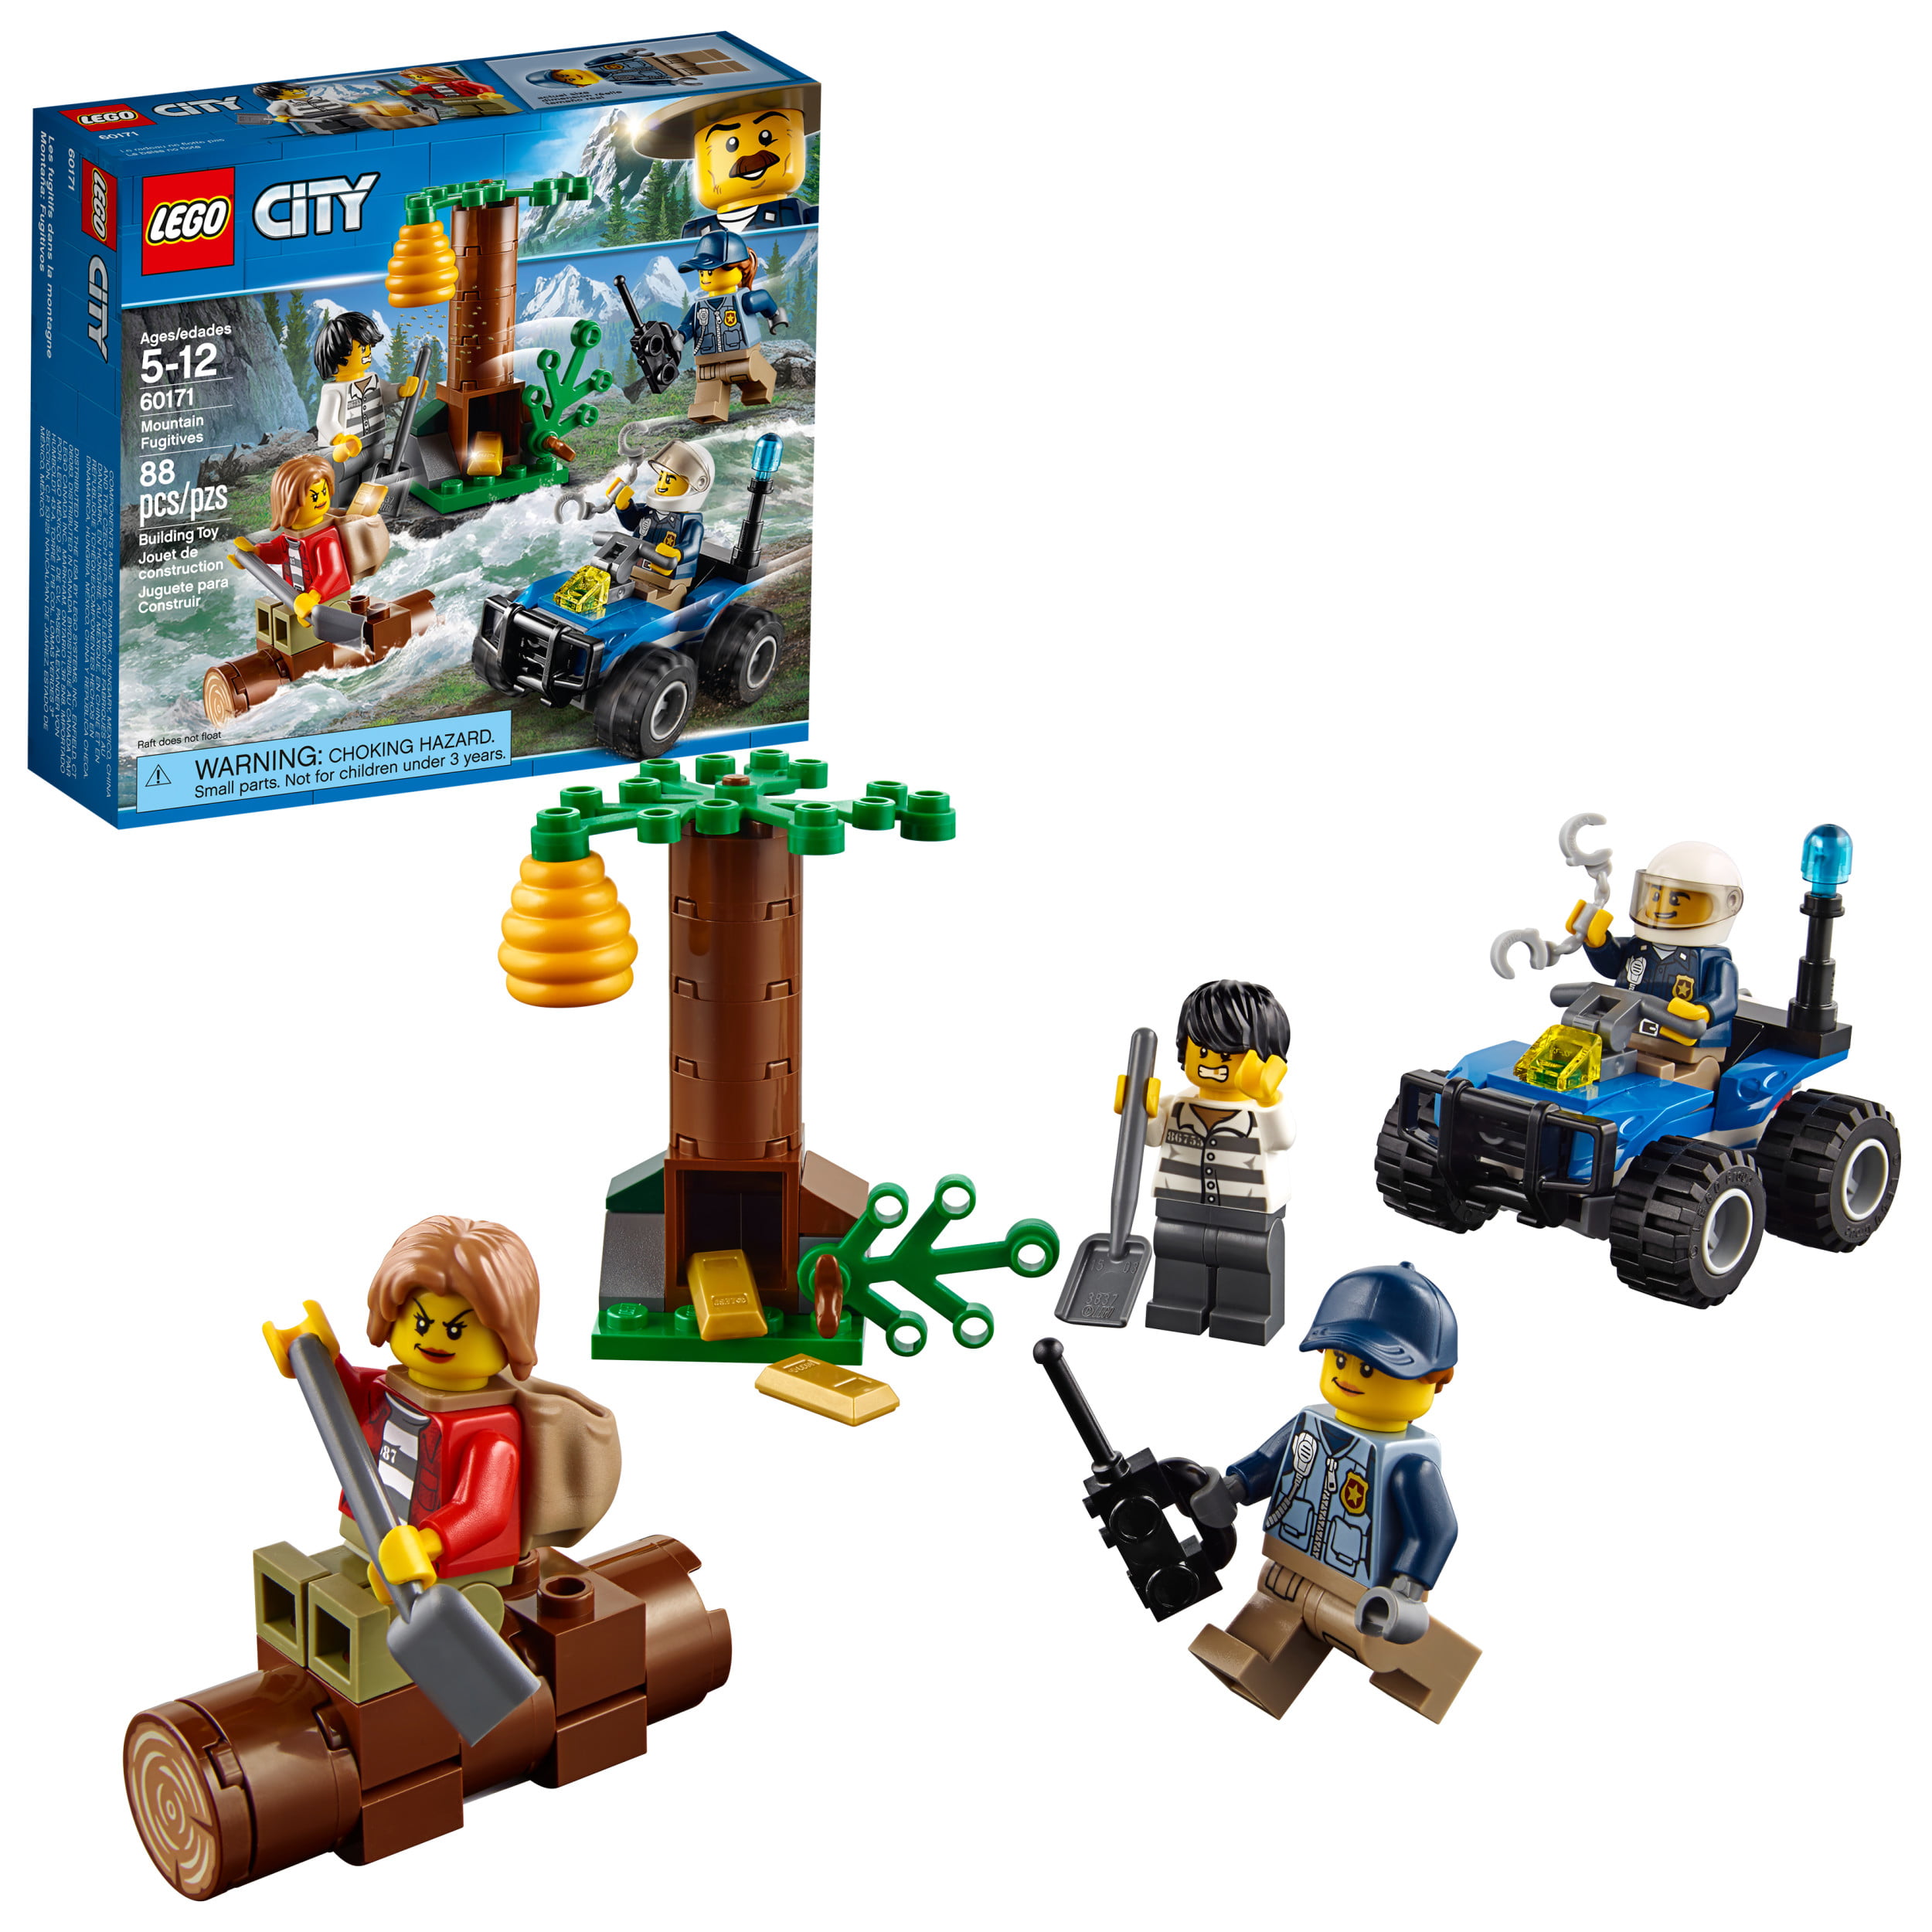 Details about   NEW LEGO CITY 60173 MINIFIGURE PAWPRINT UNDERPANTS LEGS PART X1 GENUINE 